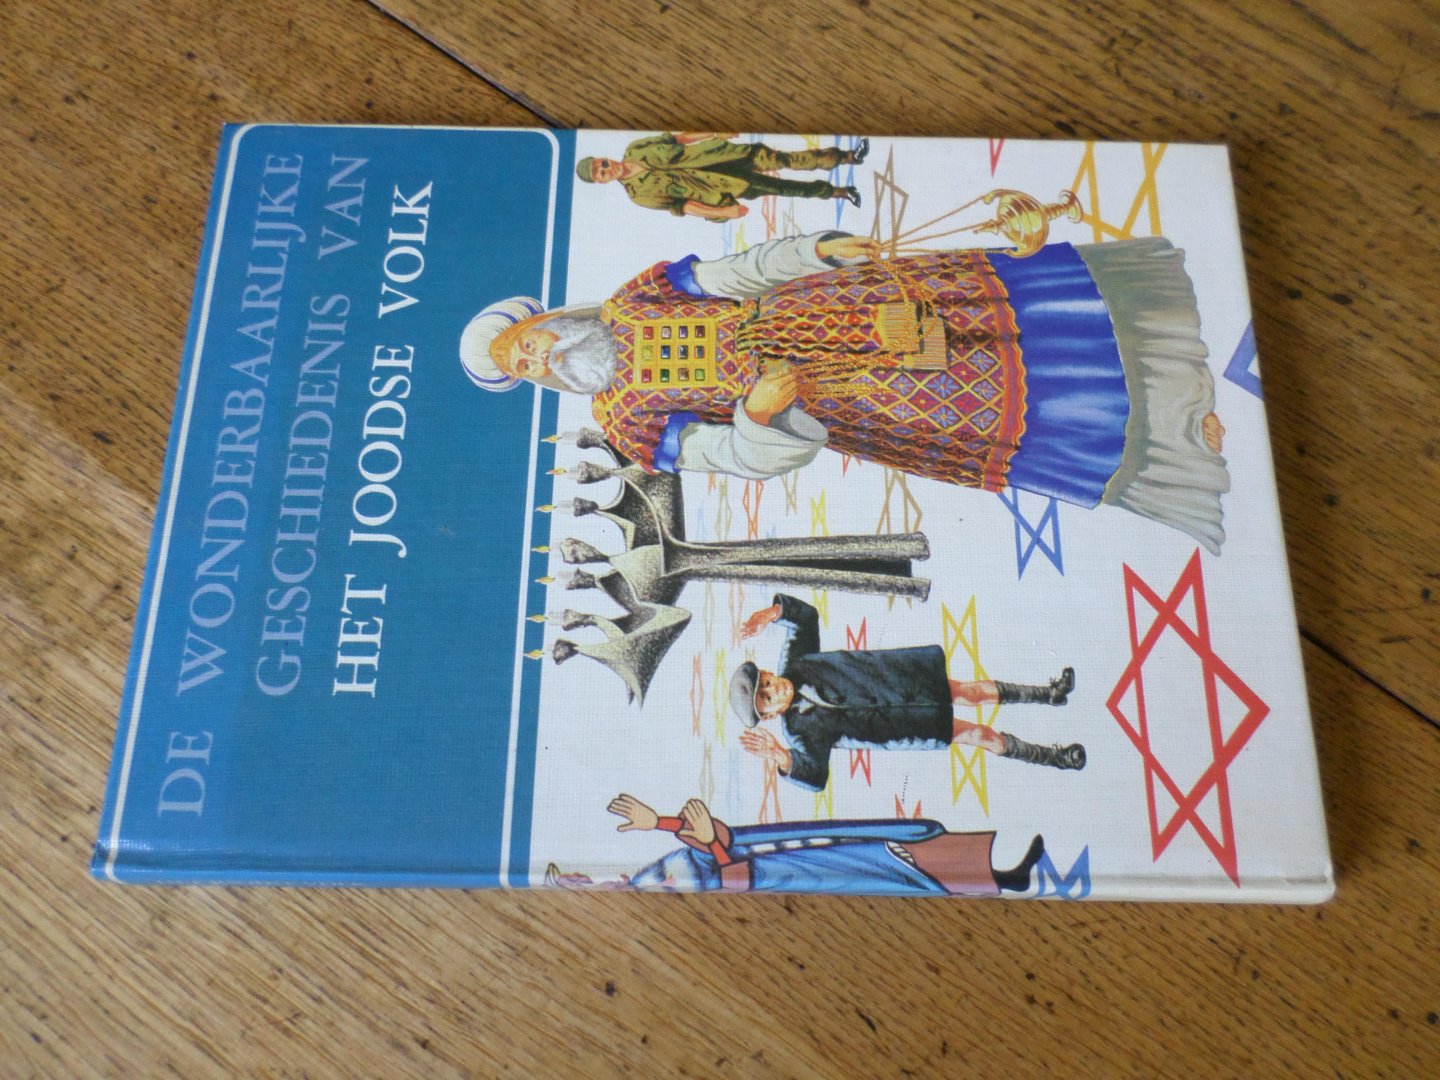 Kok, drs. P.H.G.C. (bewerkt door) - De wonderbaarlijke geschiedenis van het Joodse volk